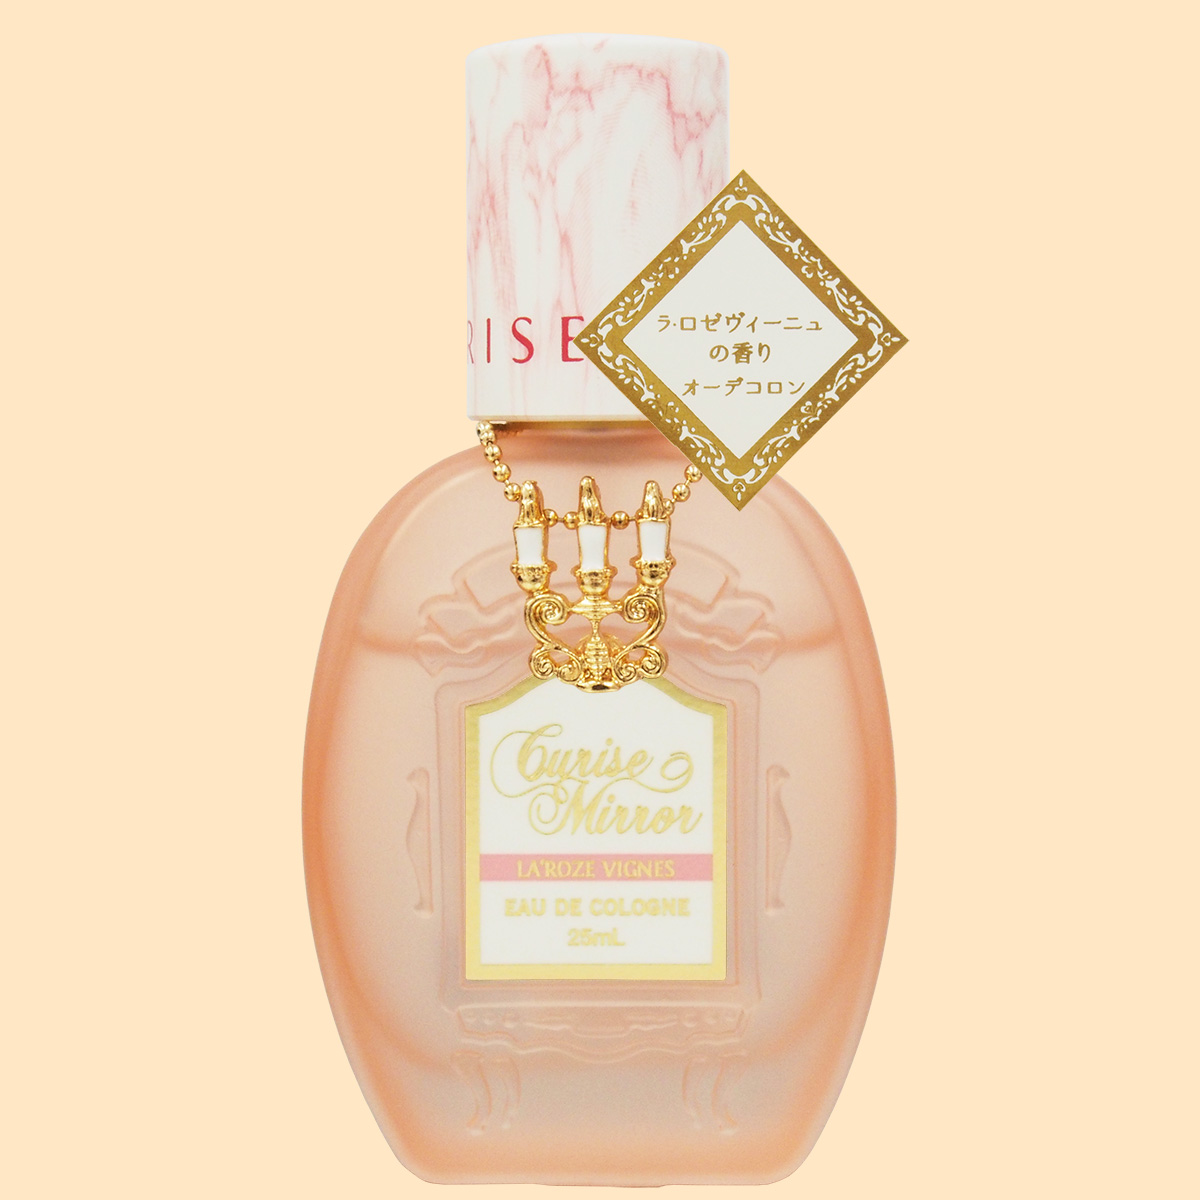 クルーズミラー オーデコロン ラ・ロゼヴィーニュの香り | Beauty-Net